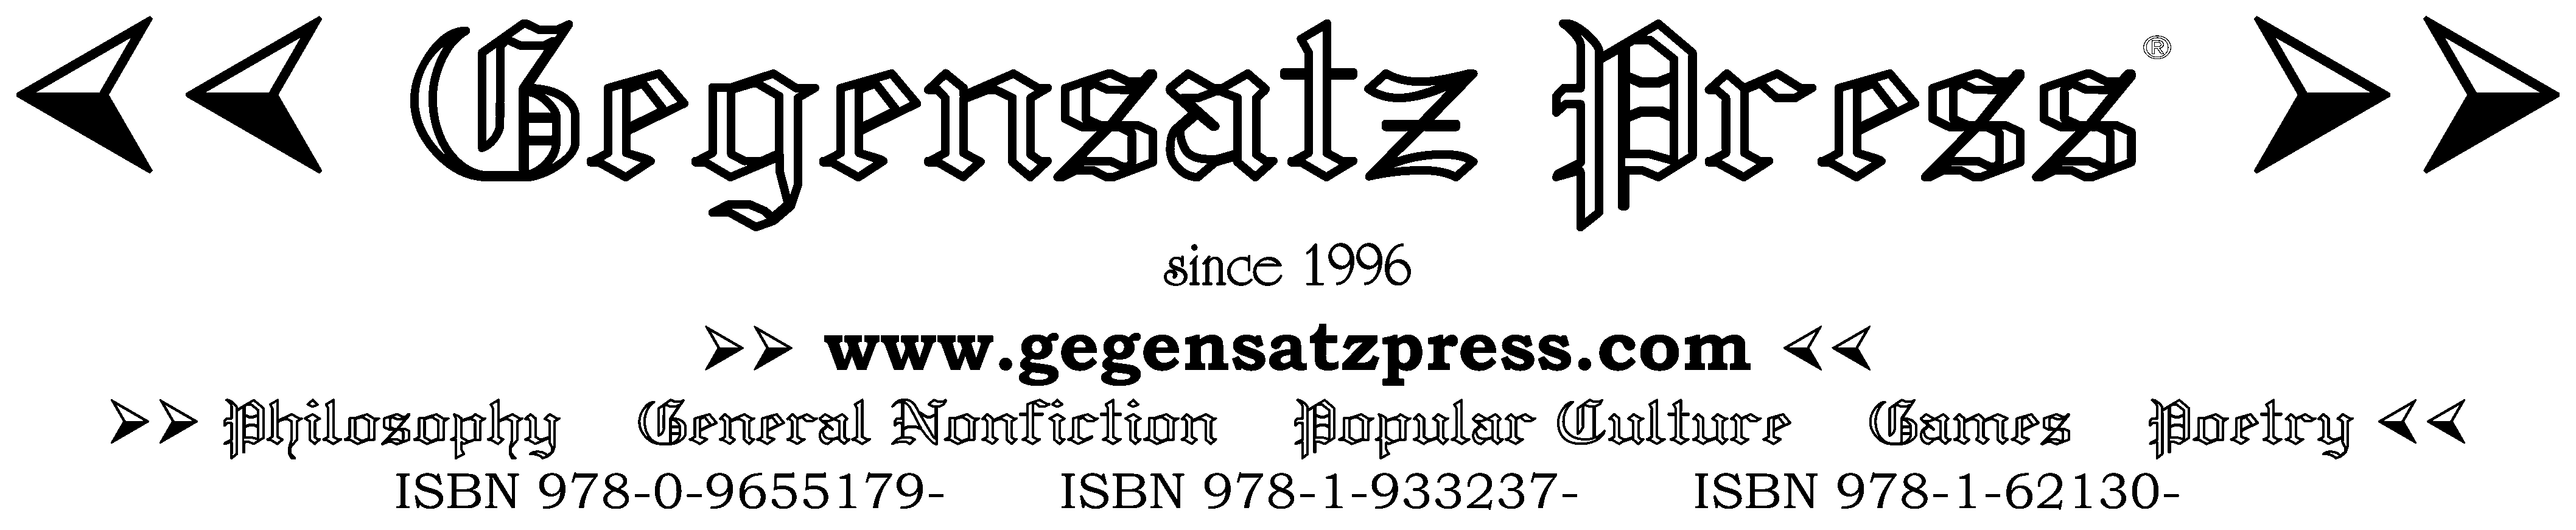 Gegensatz Press - since 1996